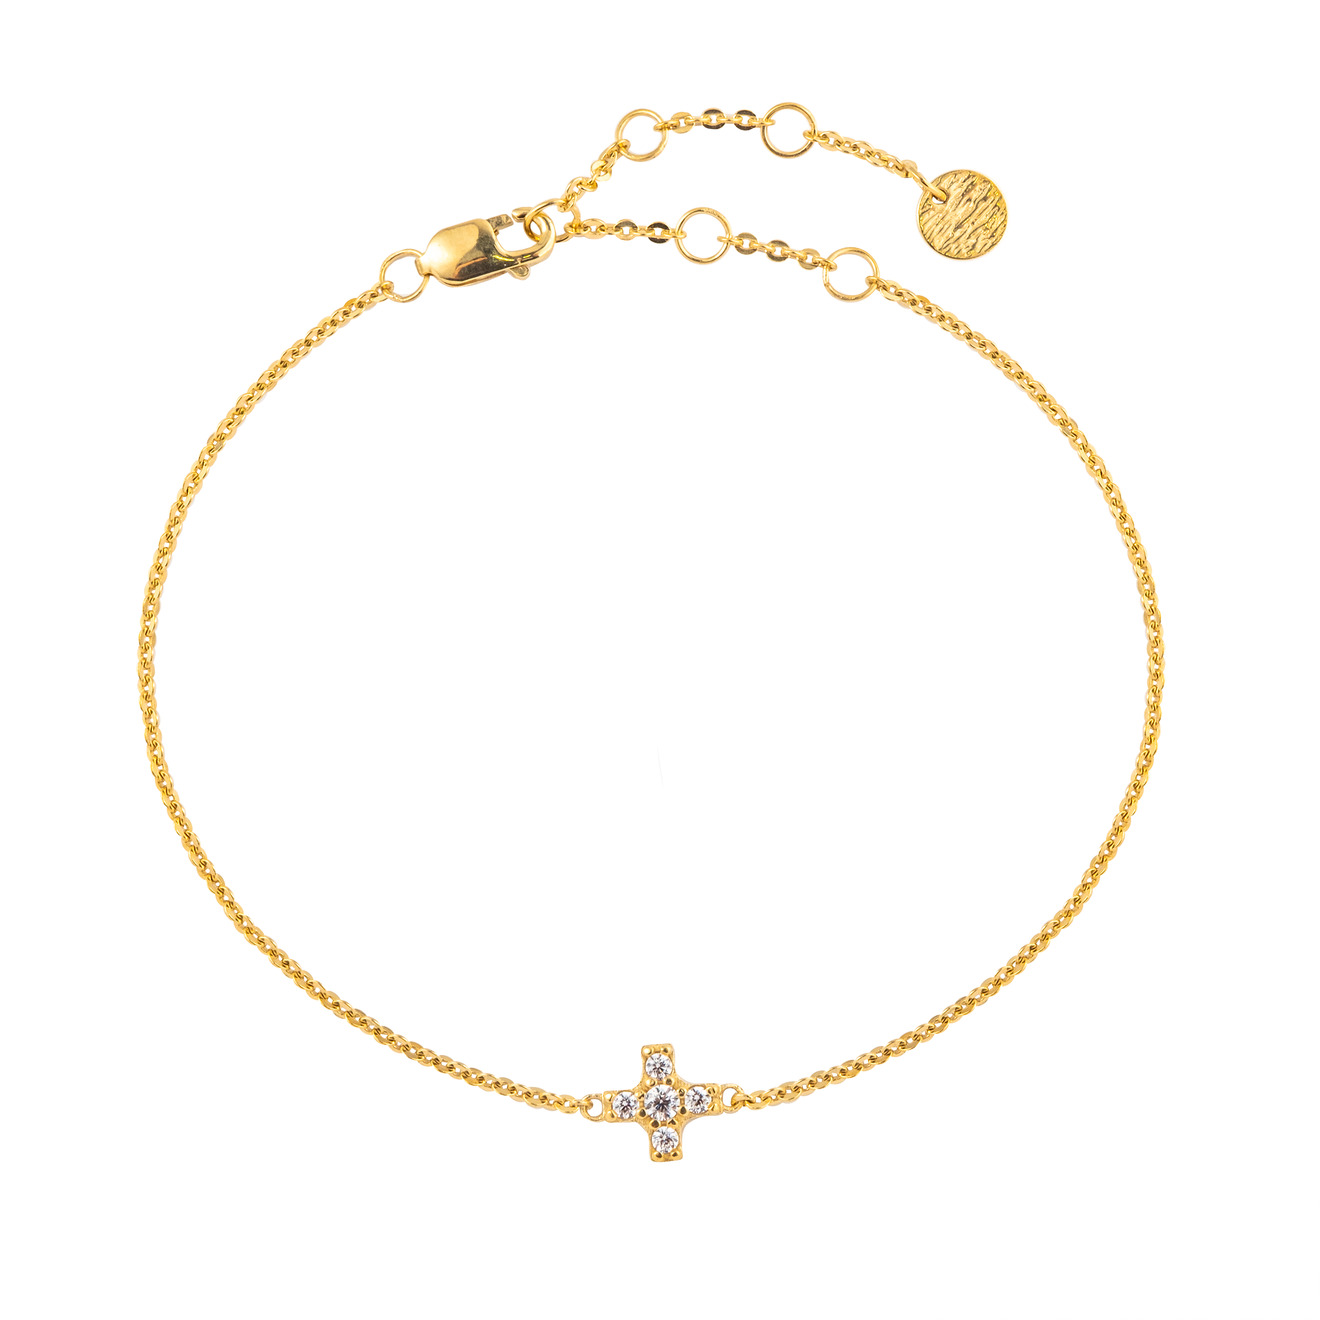 SKYE Позолоченный браслет с маленьким крестом с камнями skye позолоченный браслет с кастами